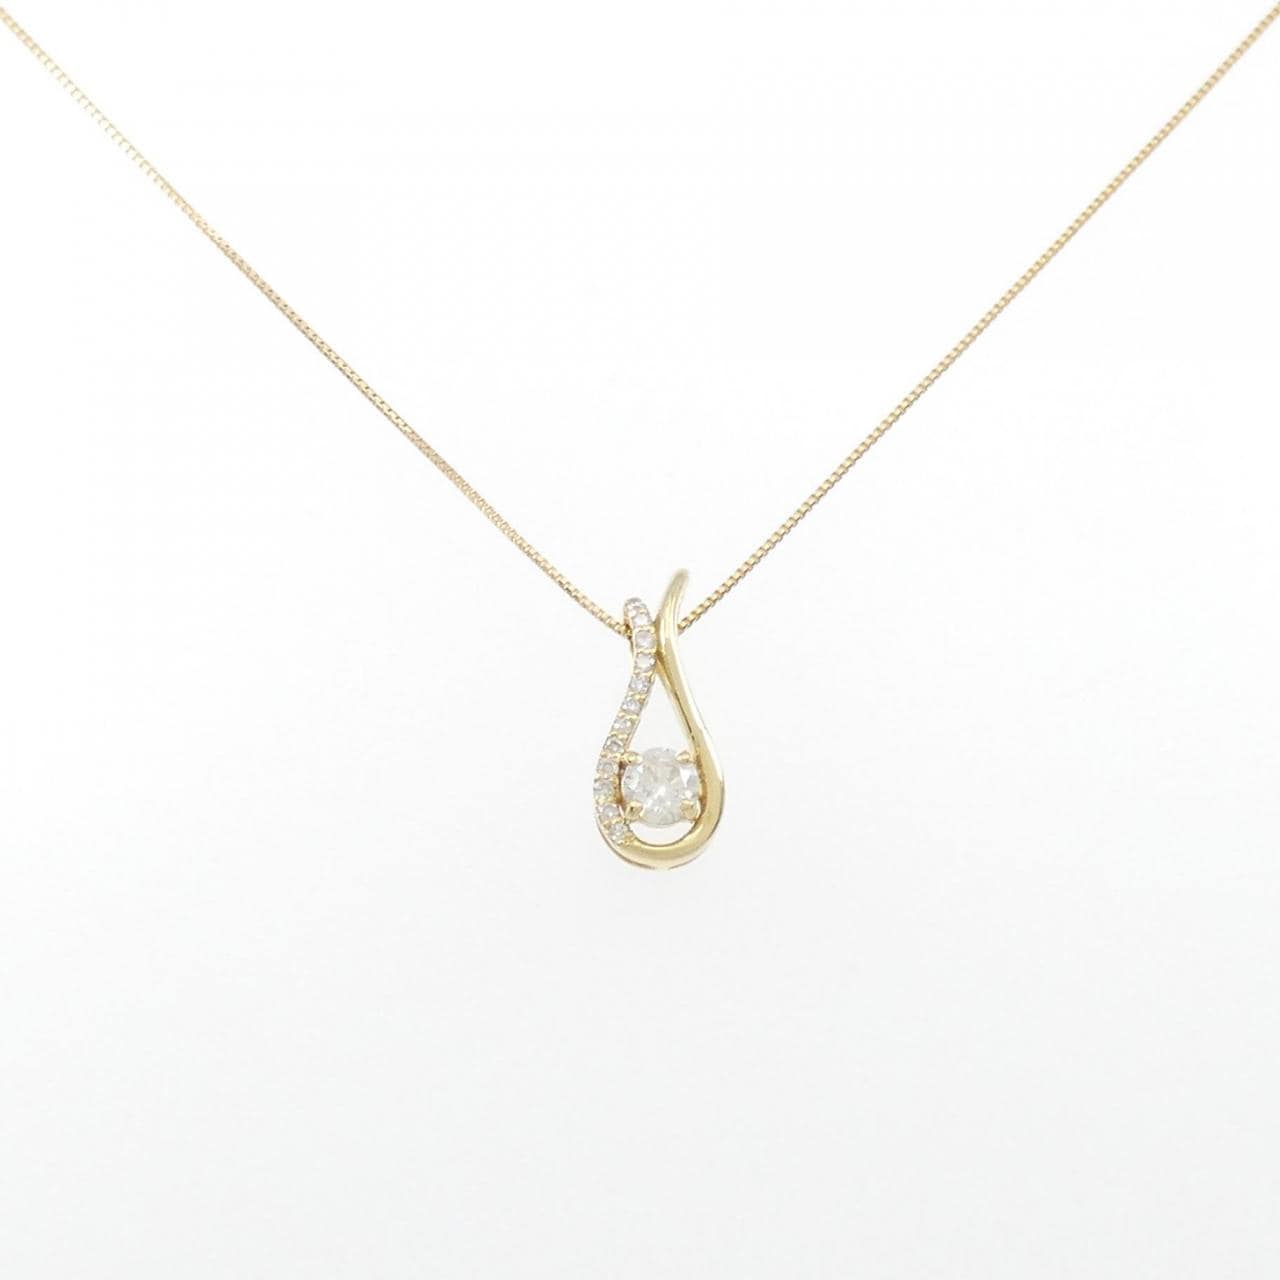 [BRAND NEW] K18YG Diamond Necklace 0.239CT I SI2 Fair